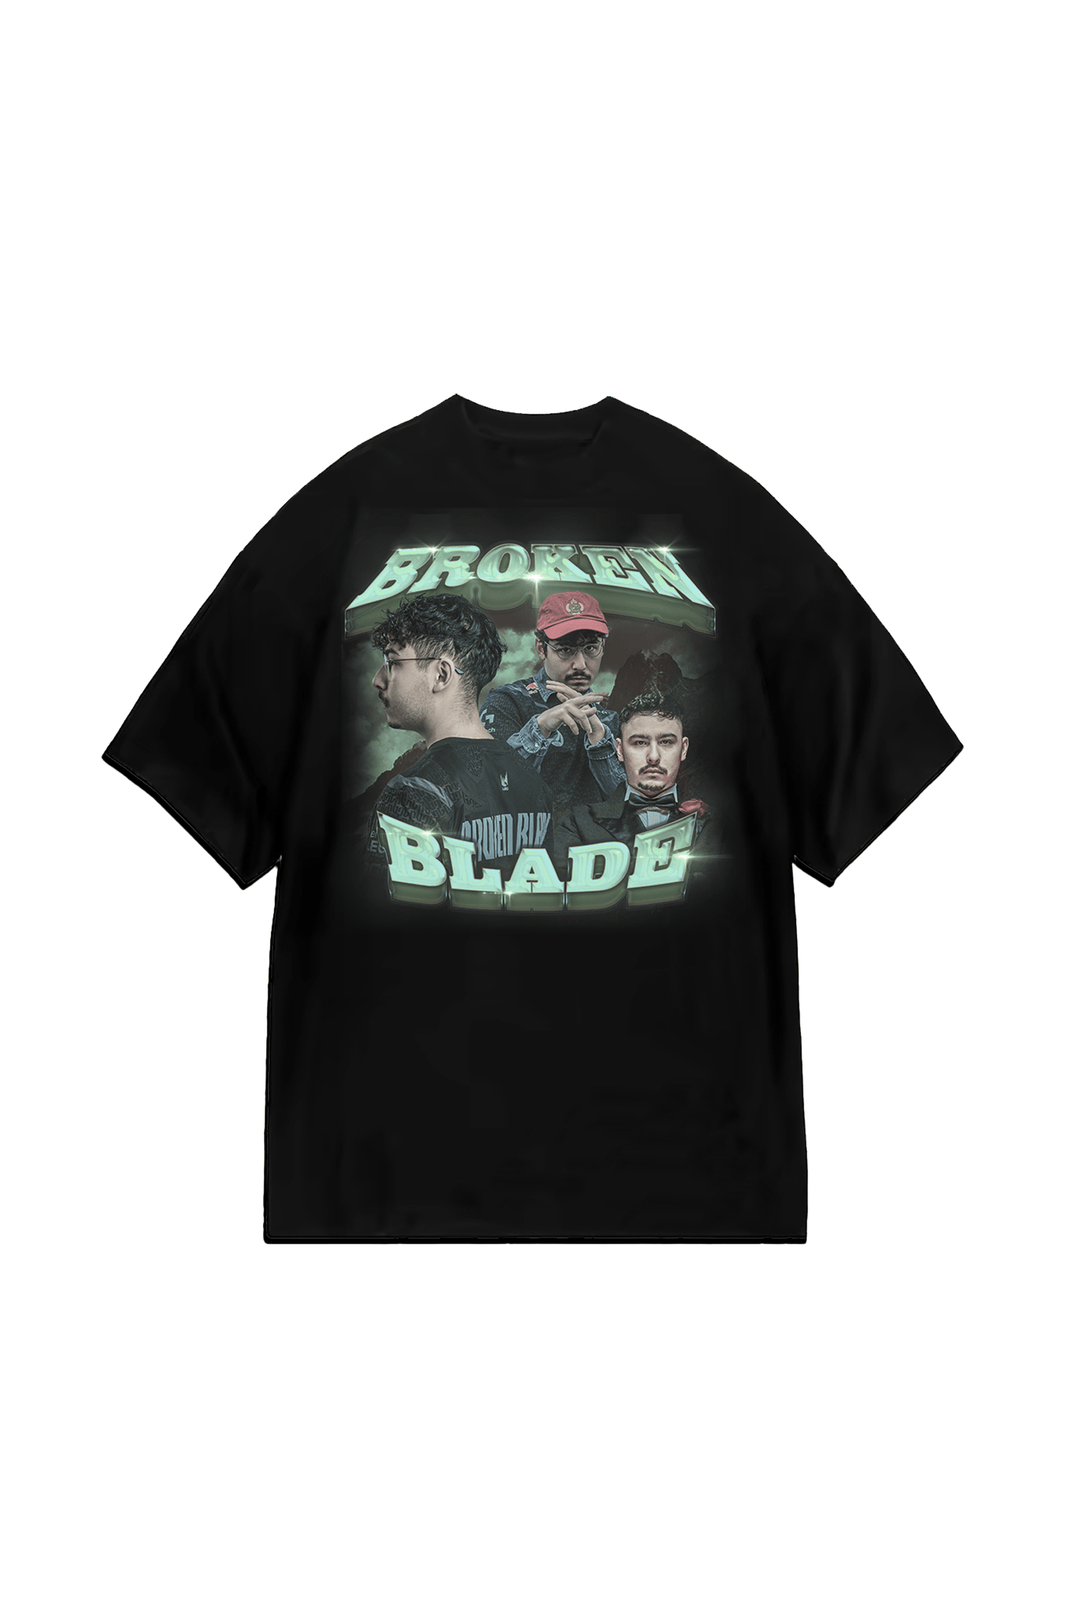 G2 Esports - Broken Blade - Bootleg T-Shirt